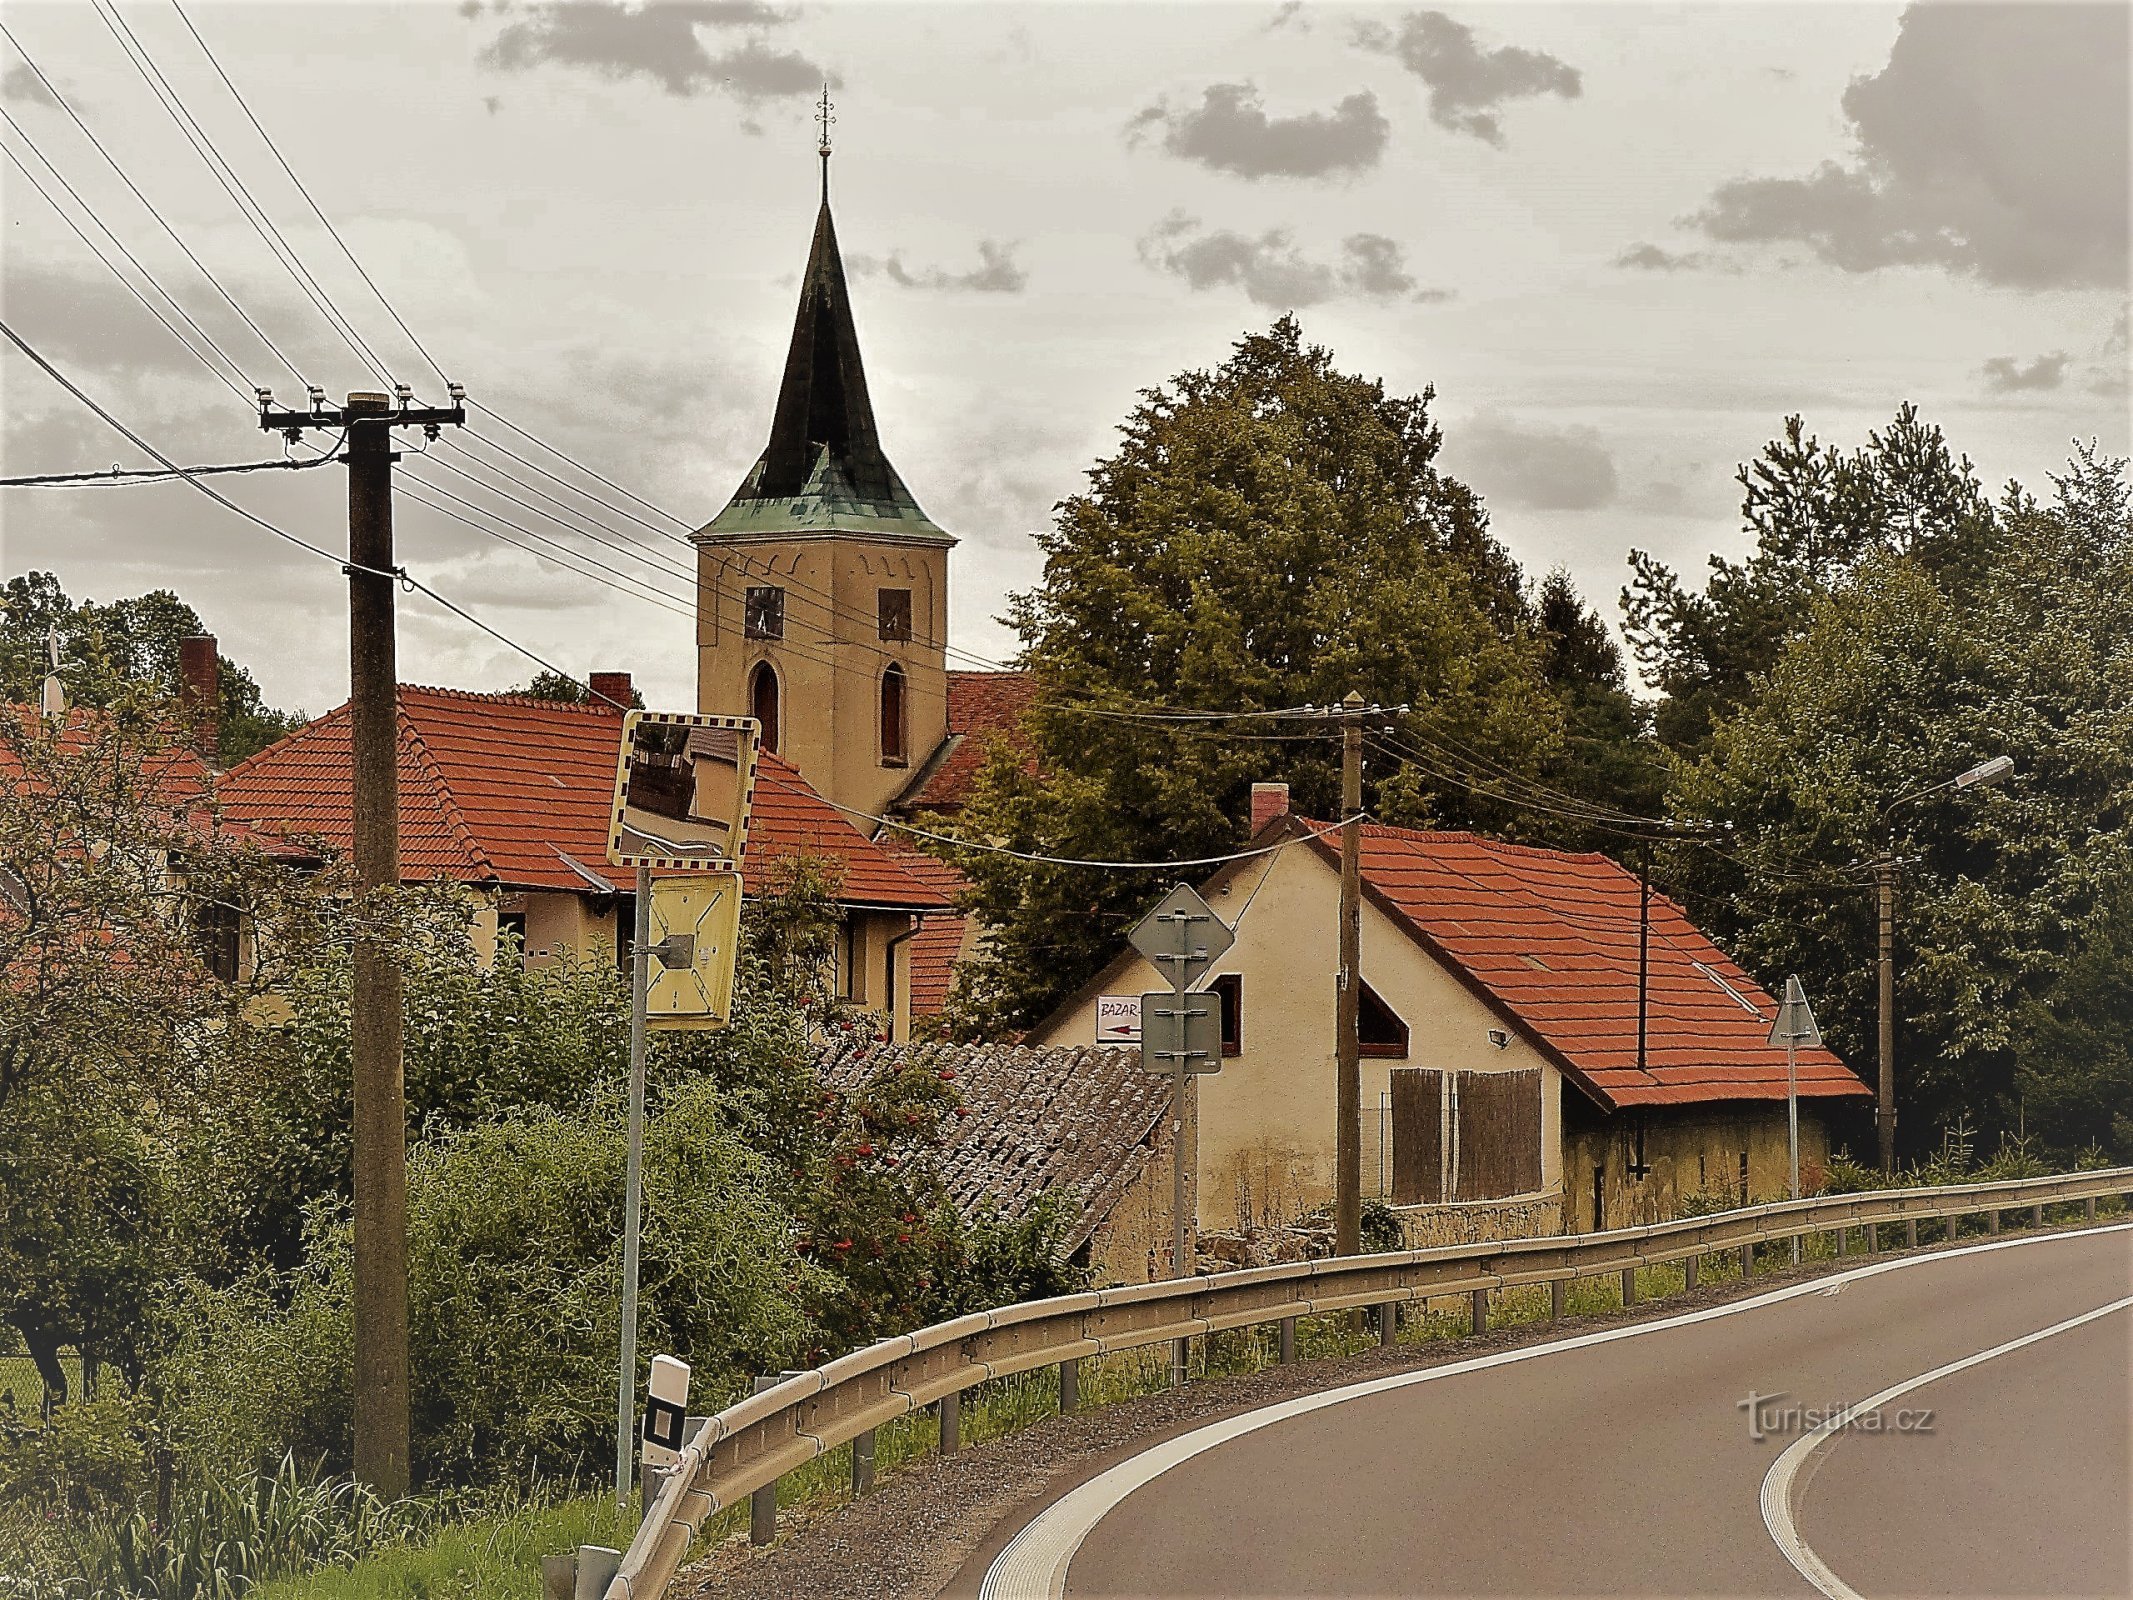 Oleška, op de achtergrond de kerk van Allerheiligen